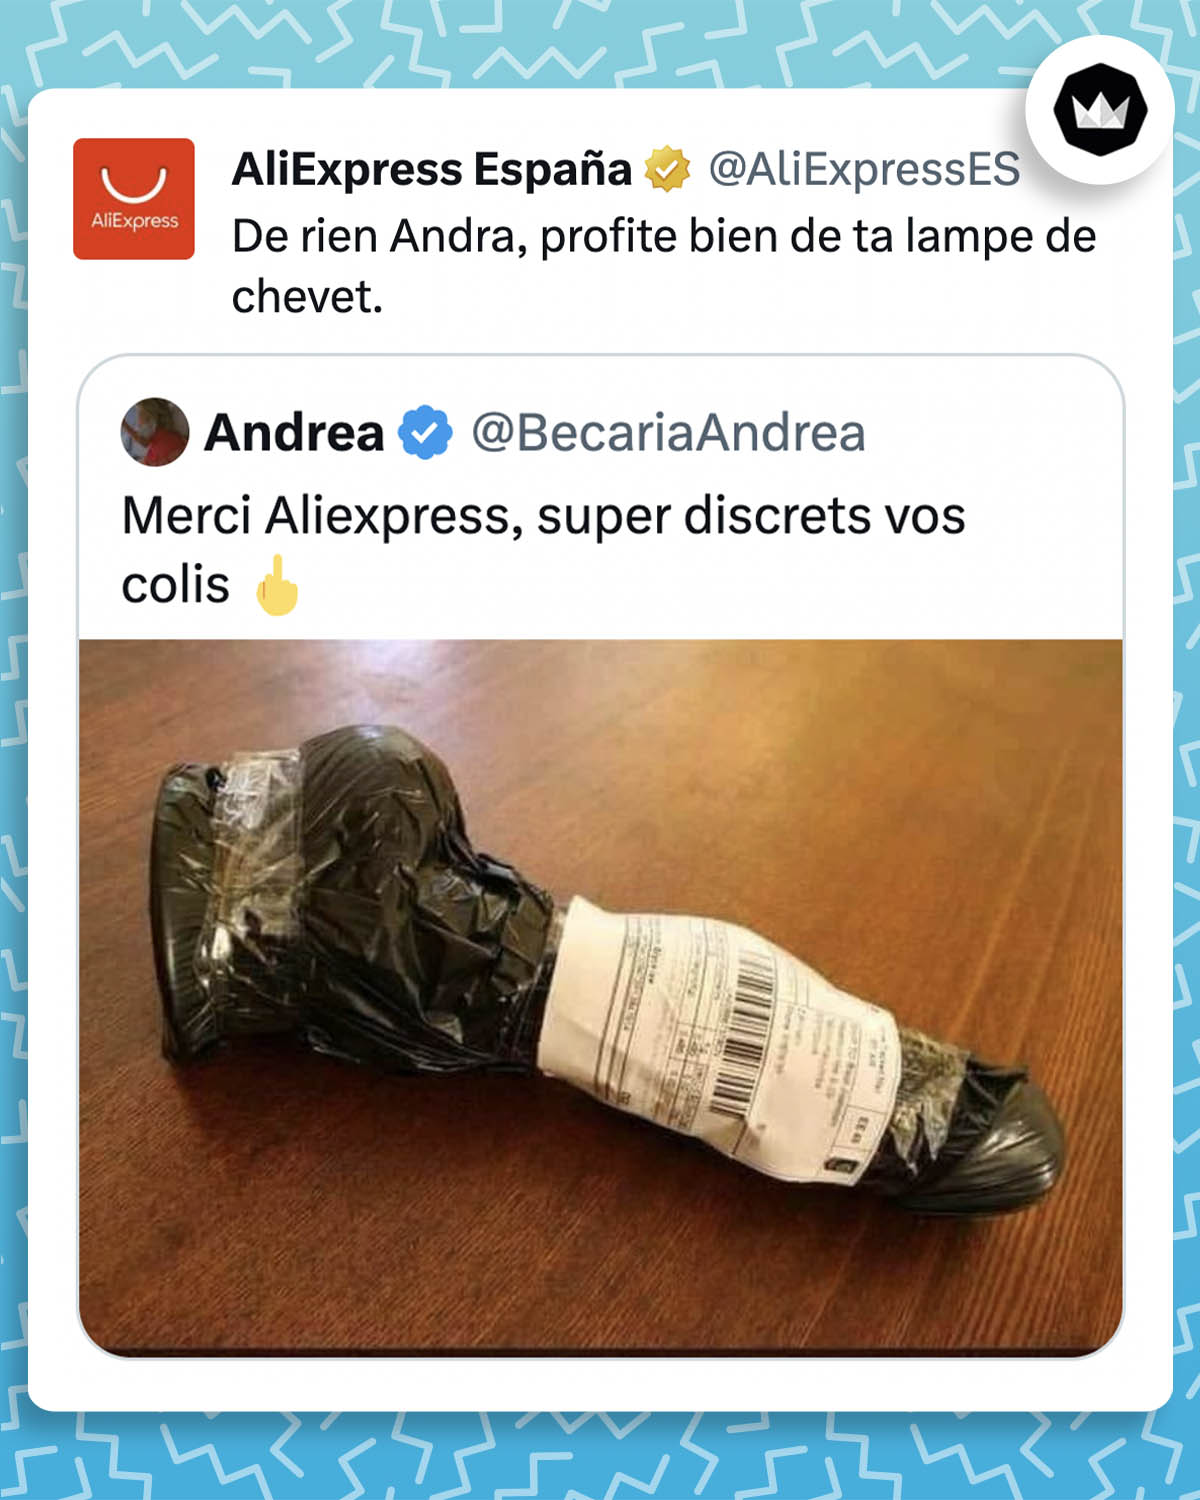 Traduit de l'espagnol : 

@BecariaAndrea :
"Merci Aliexpress, très discrets vos colis" accompagné de l'emoji doigt d'honneur
@AliExpressES :
"De rien Andrea, profite bien de ta lampe de chevet